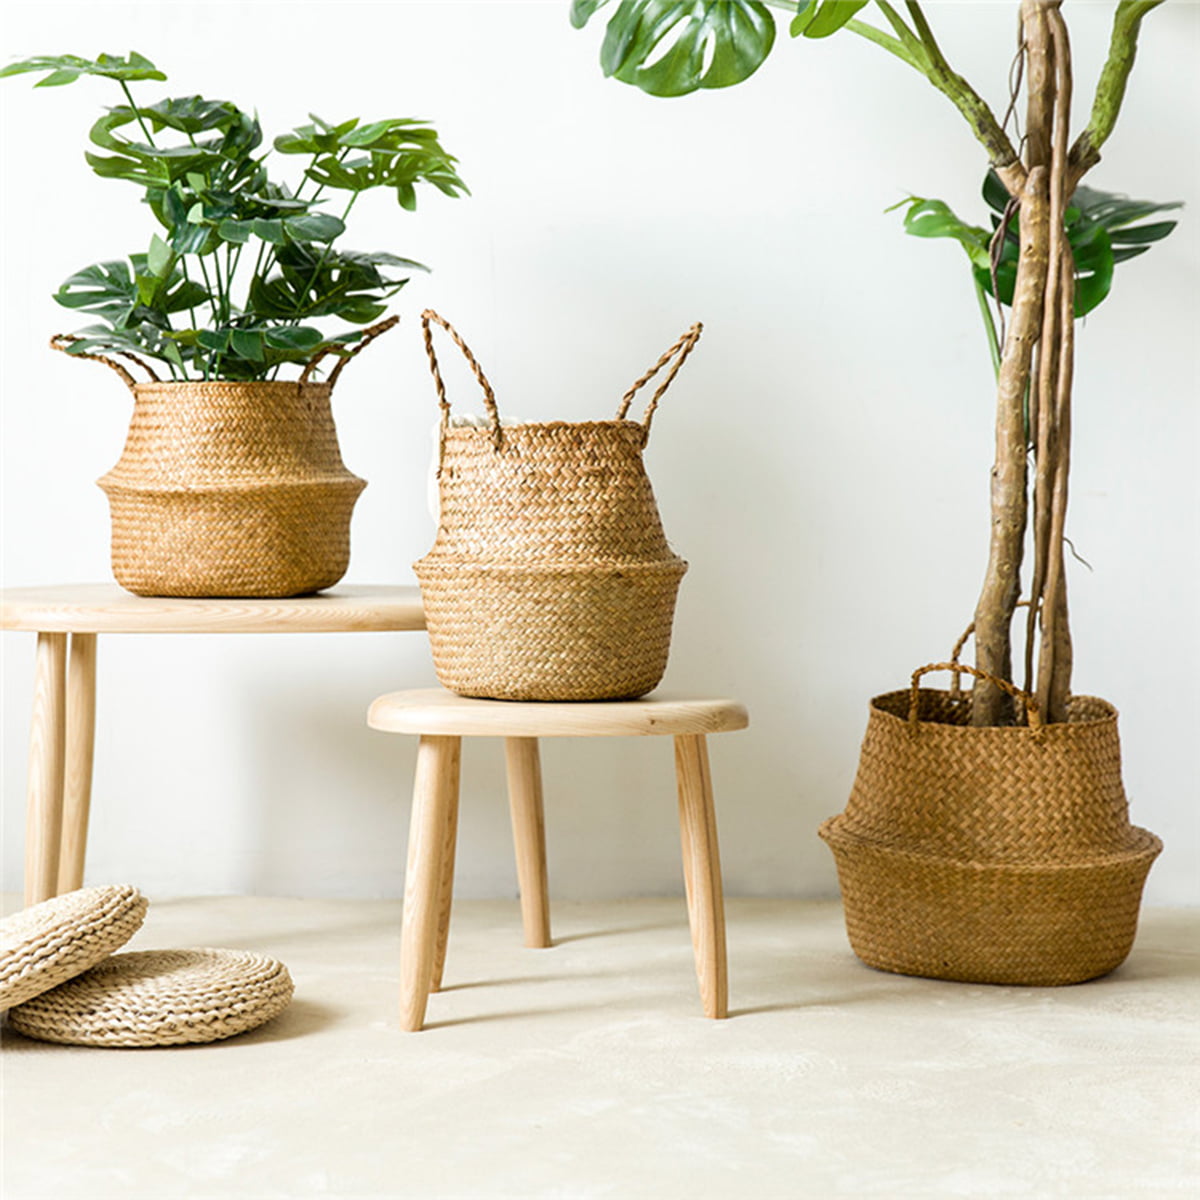 Seagrass Wicker Basket Foldable Plant Pot Nursery Laundry Home Storage Z4X7 